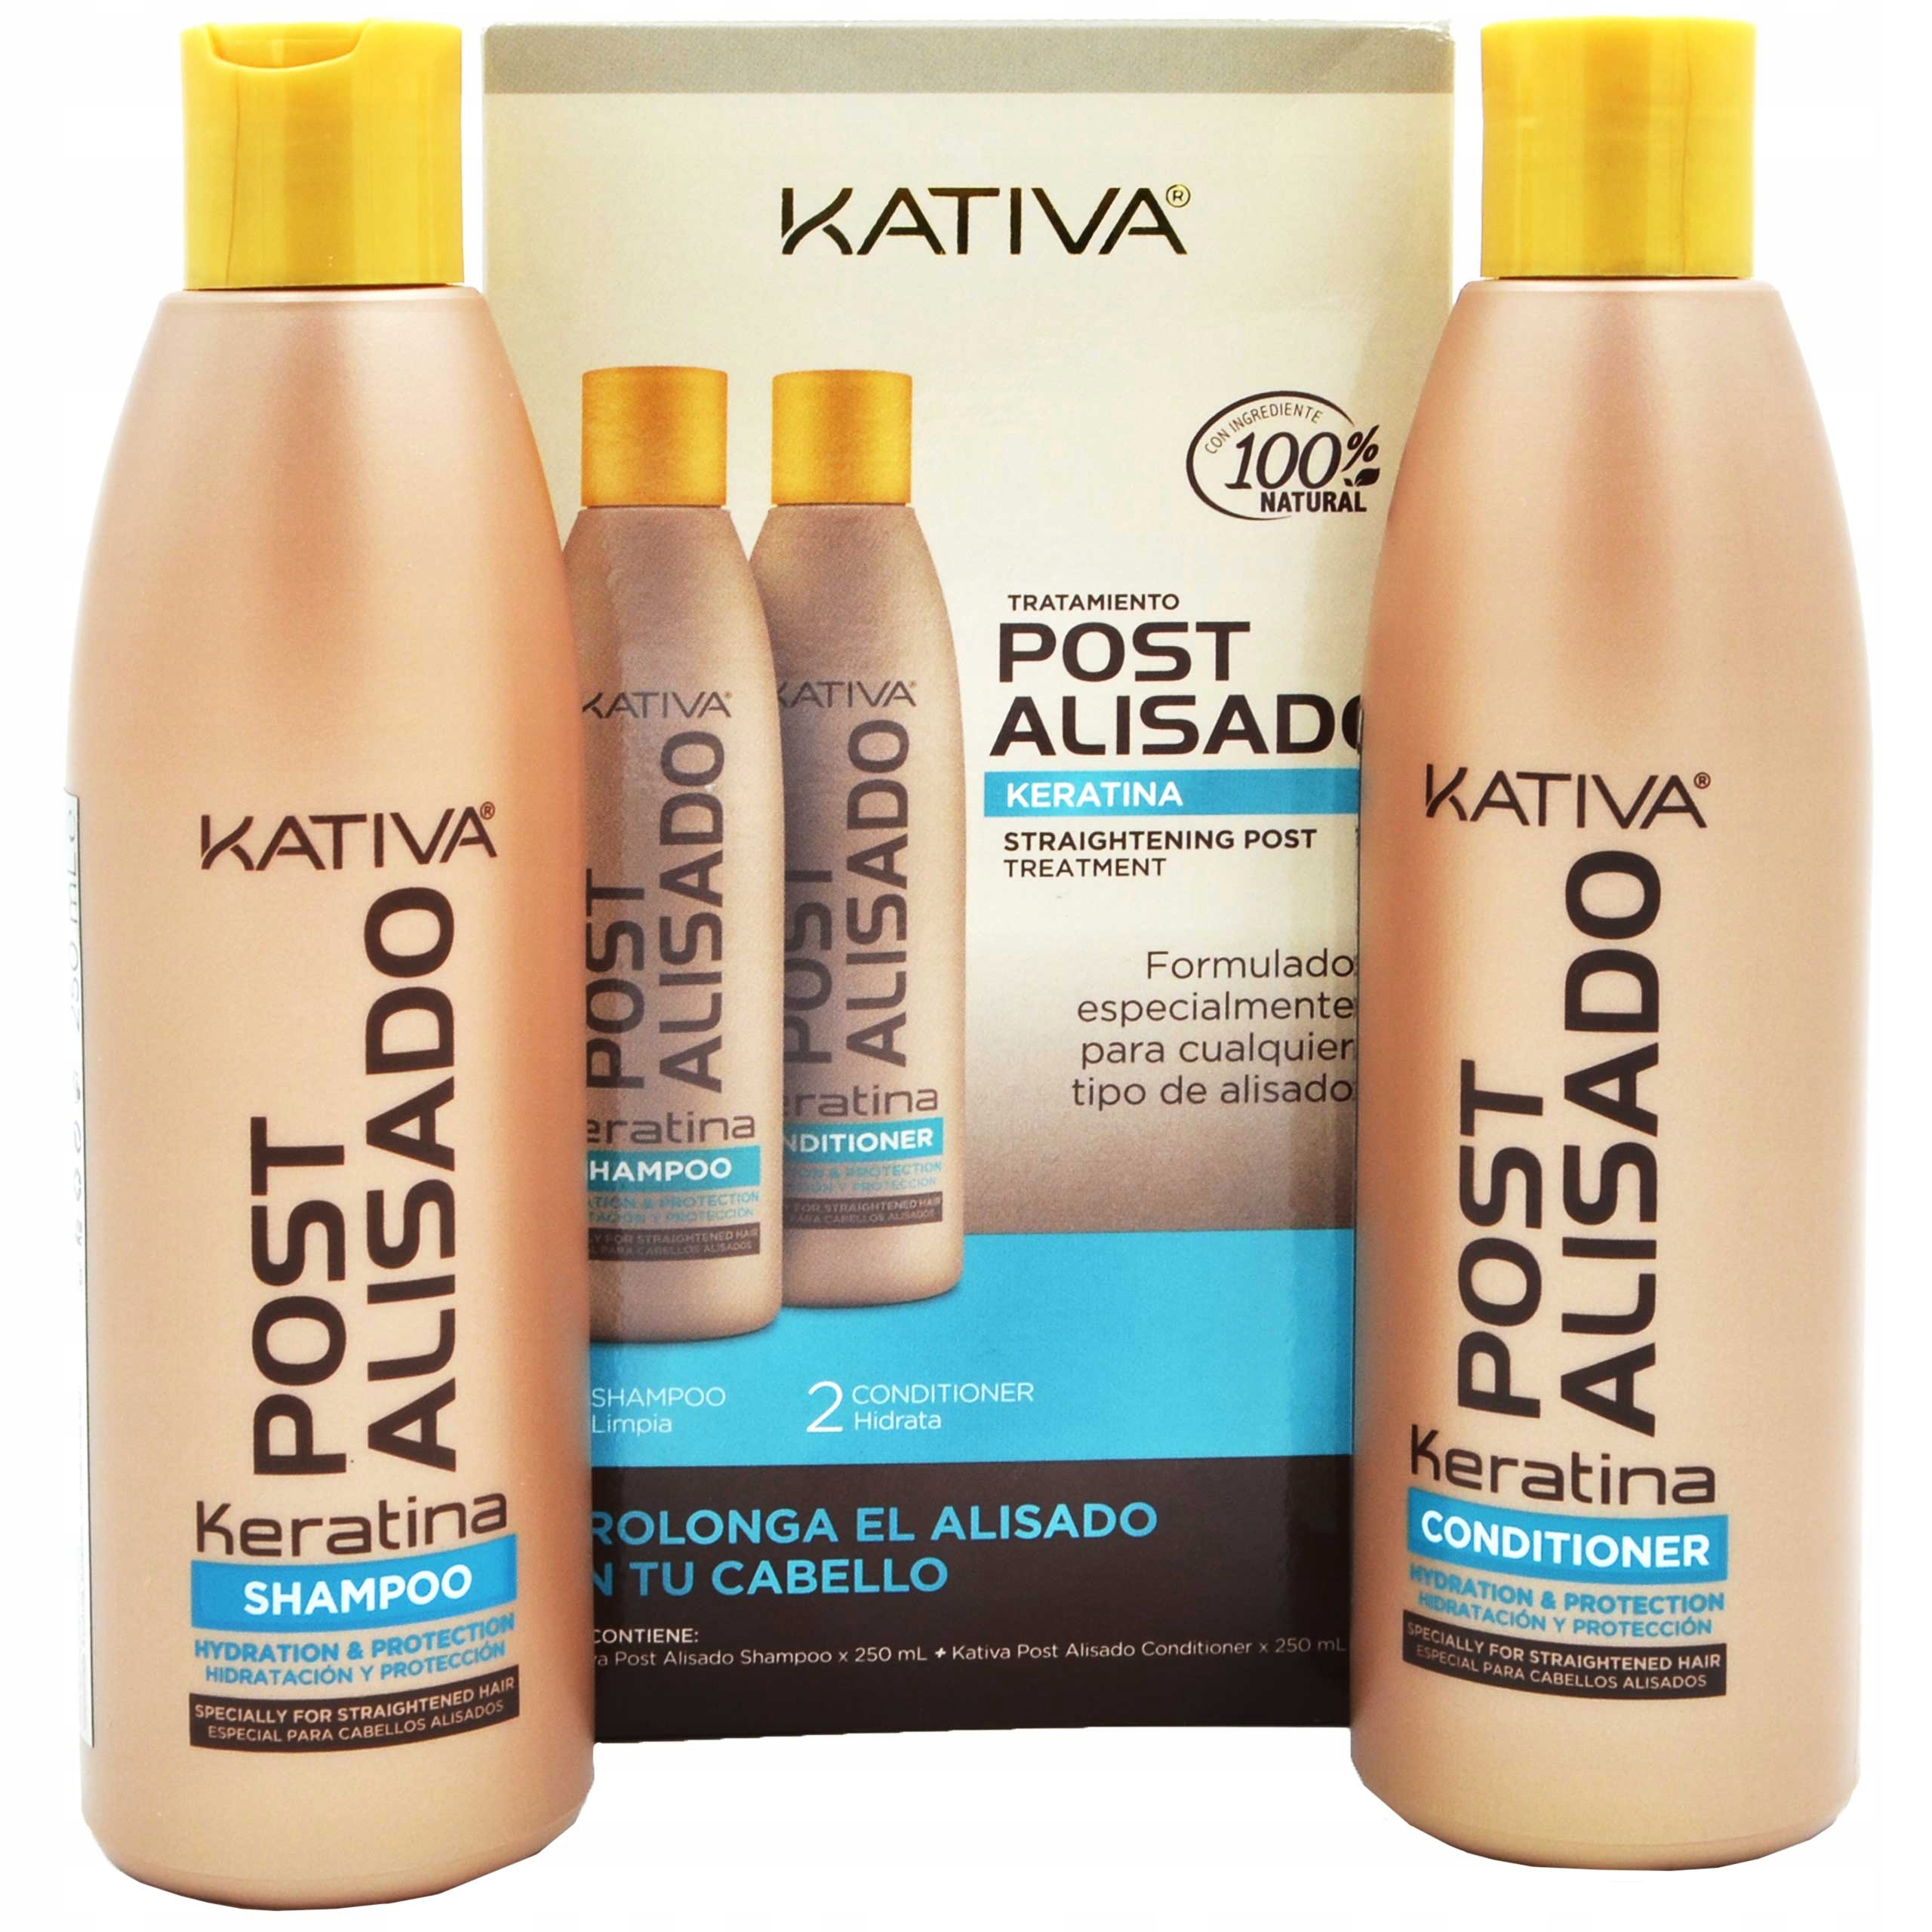 naturalny szampon do włosów po keratynowym prostowaniu